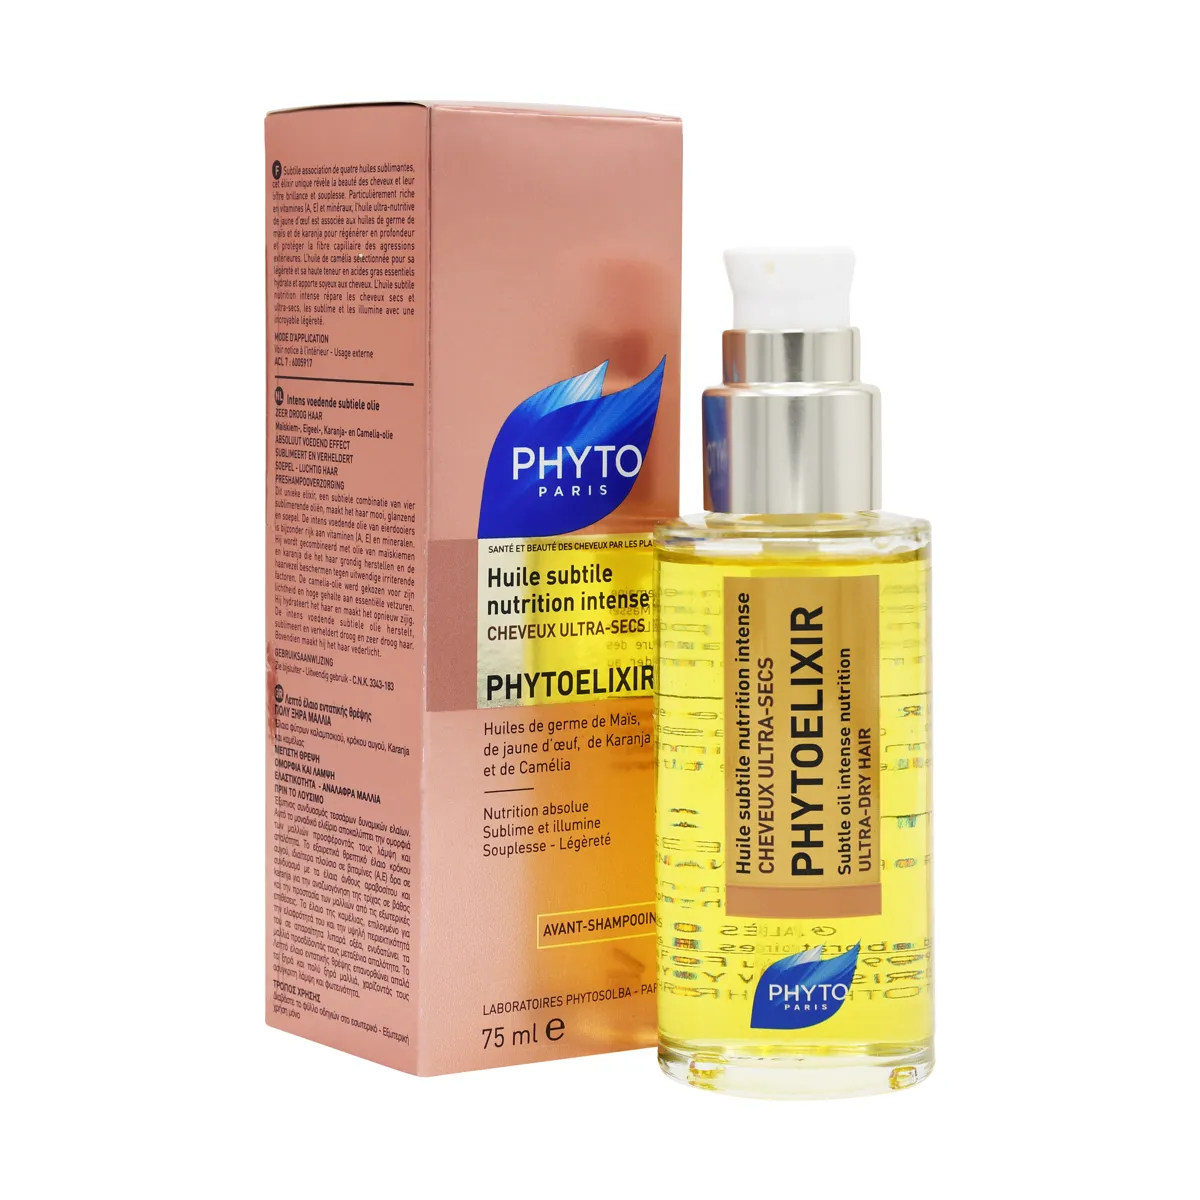 Phytoelixir Subtle Intense Nutrition Oil For Ultra Dry Hair 75 ml